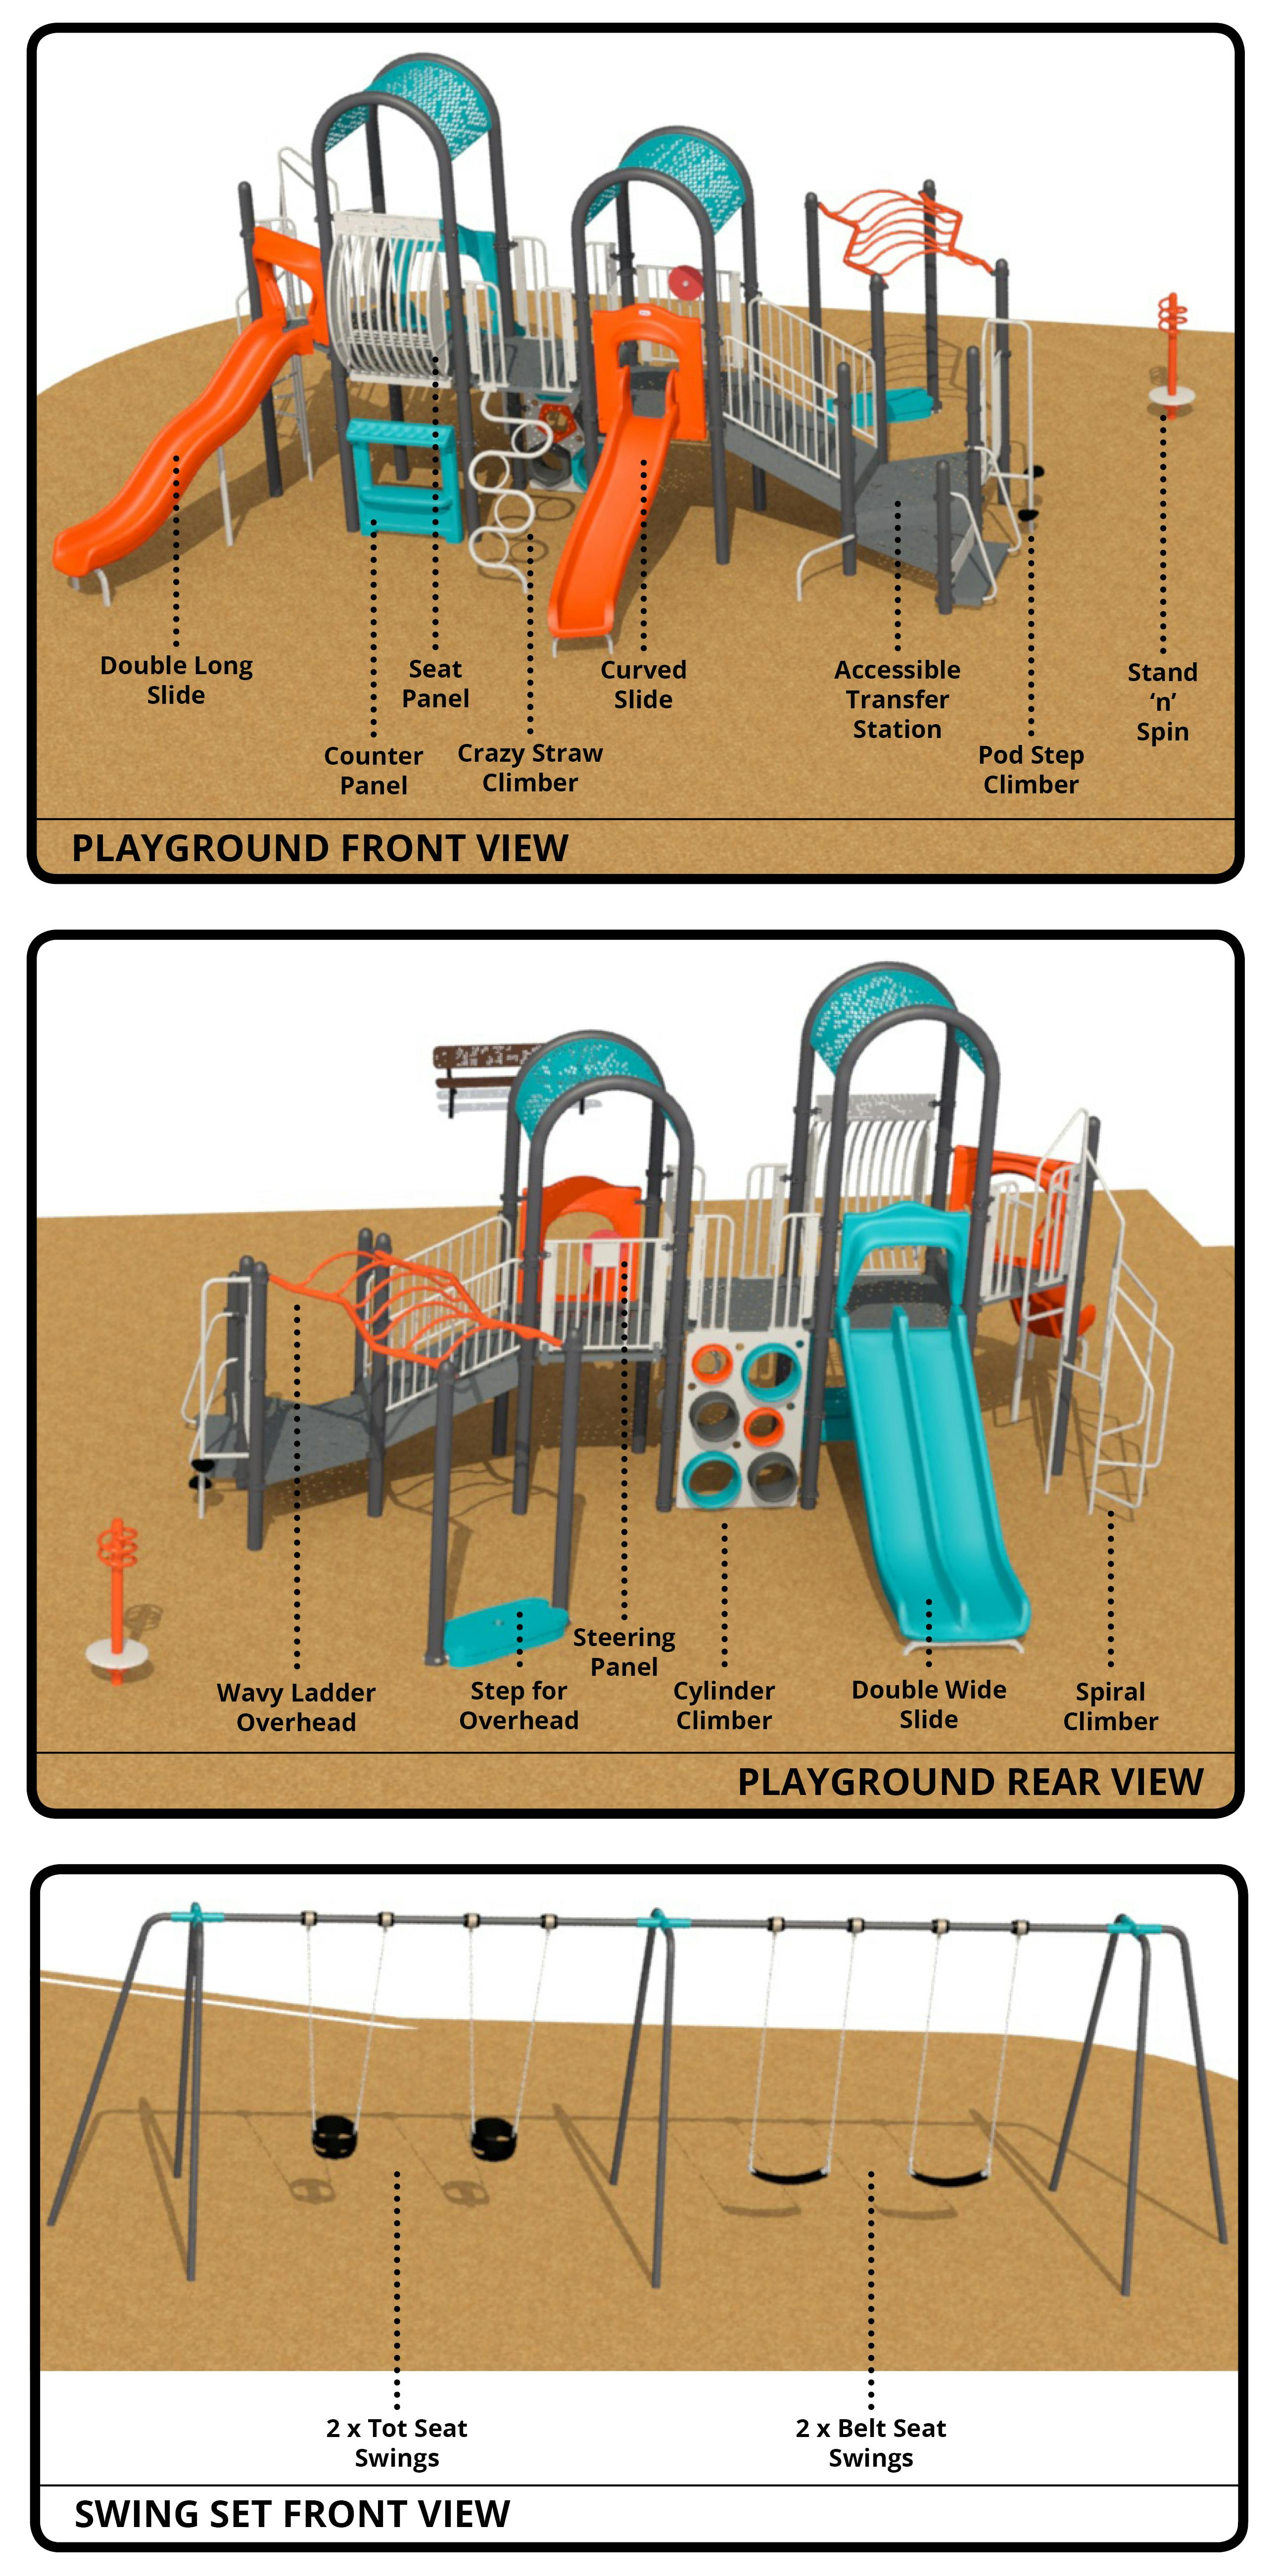 Final Playground Design